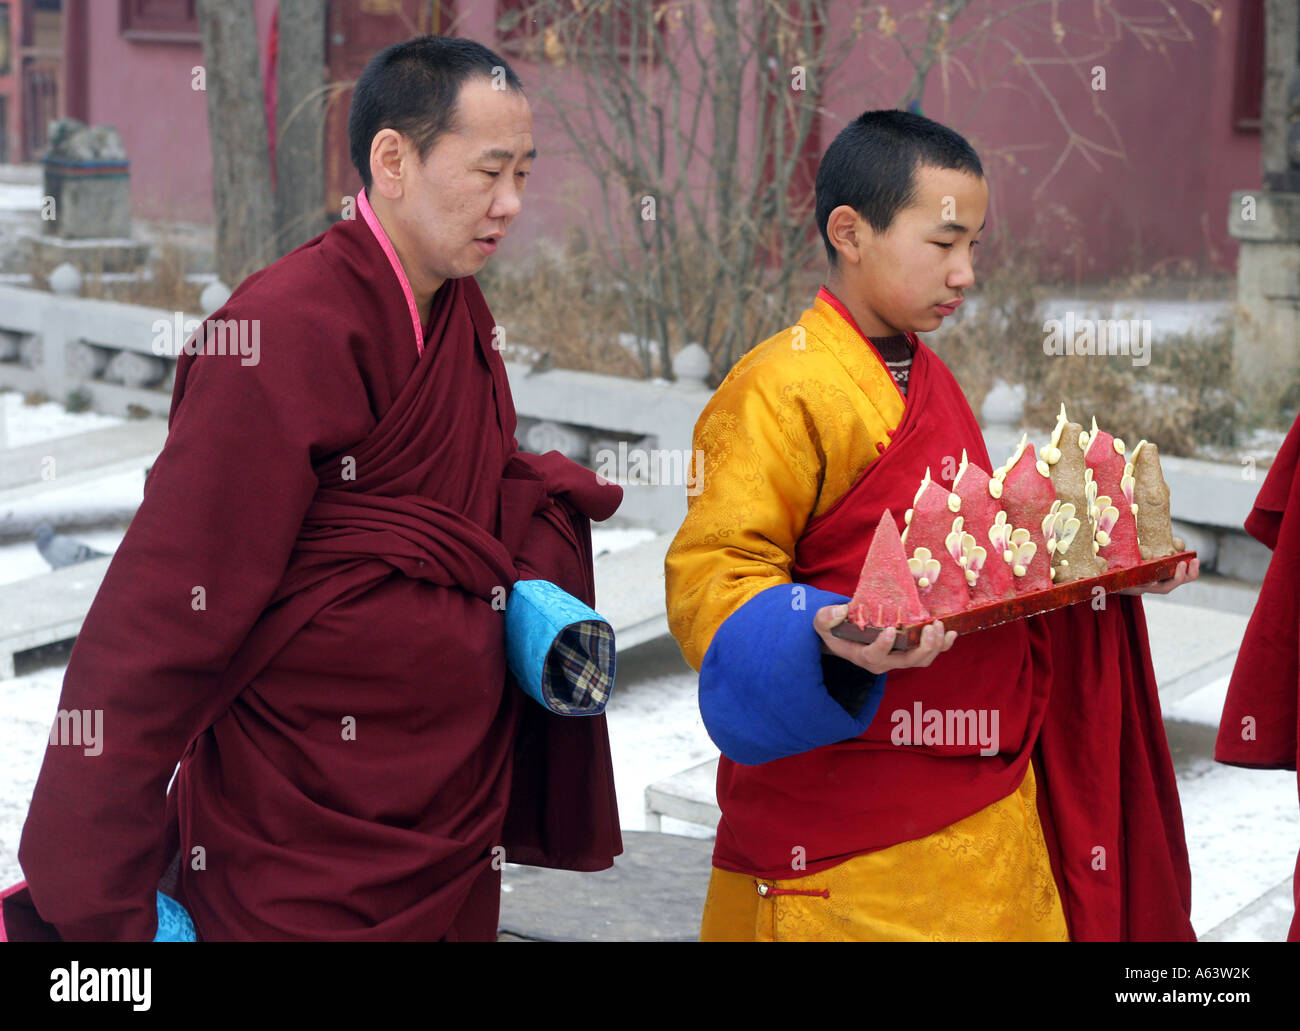 La Mongolie, des moines bouddhistes dans le monastère bouddhiste Gandantegchenling, Ulaan Bataar Banque D'Images